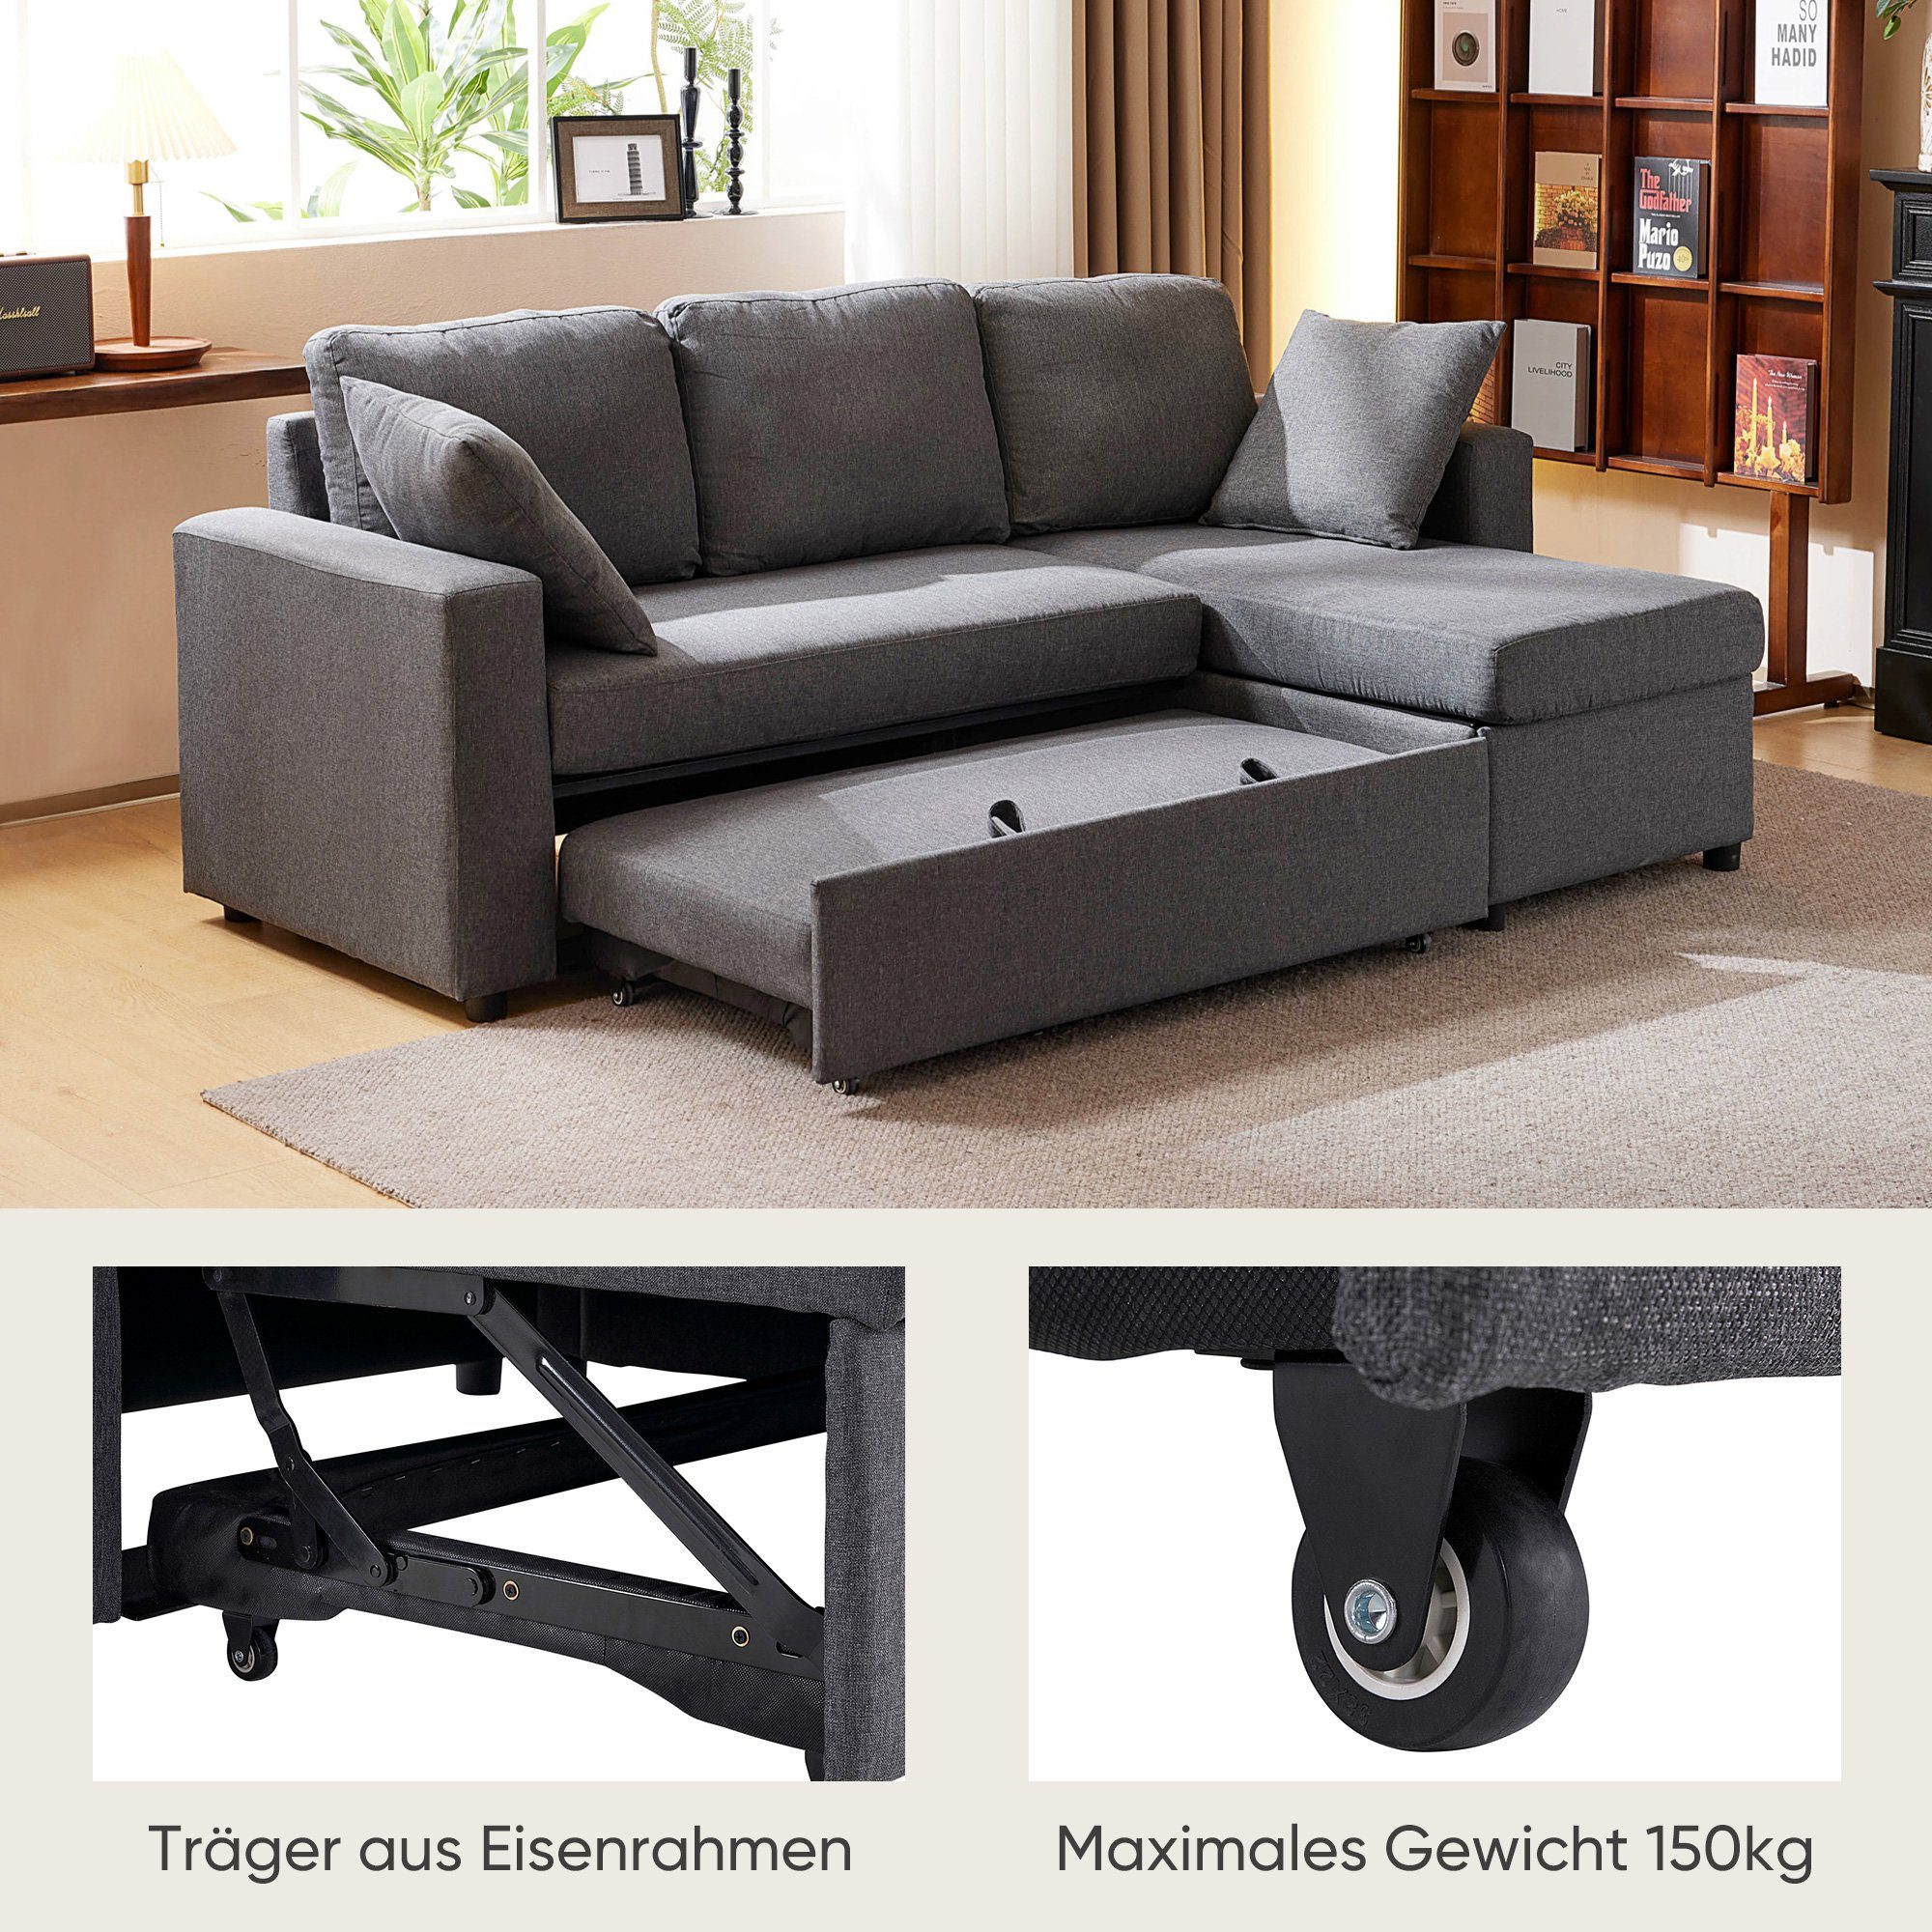 OKWISH Sofas Design, Ecksofa modernes Schlafsofa mit Sofa, Stauraum, mit Polstermöbel, Wohnzimmersofas Schlaffunktion,